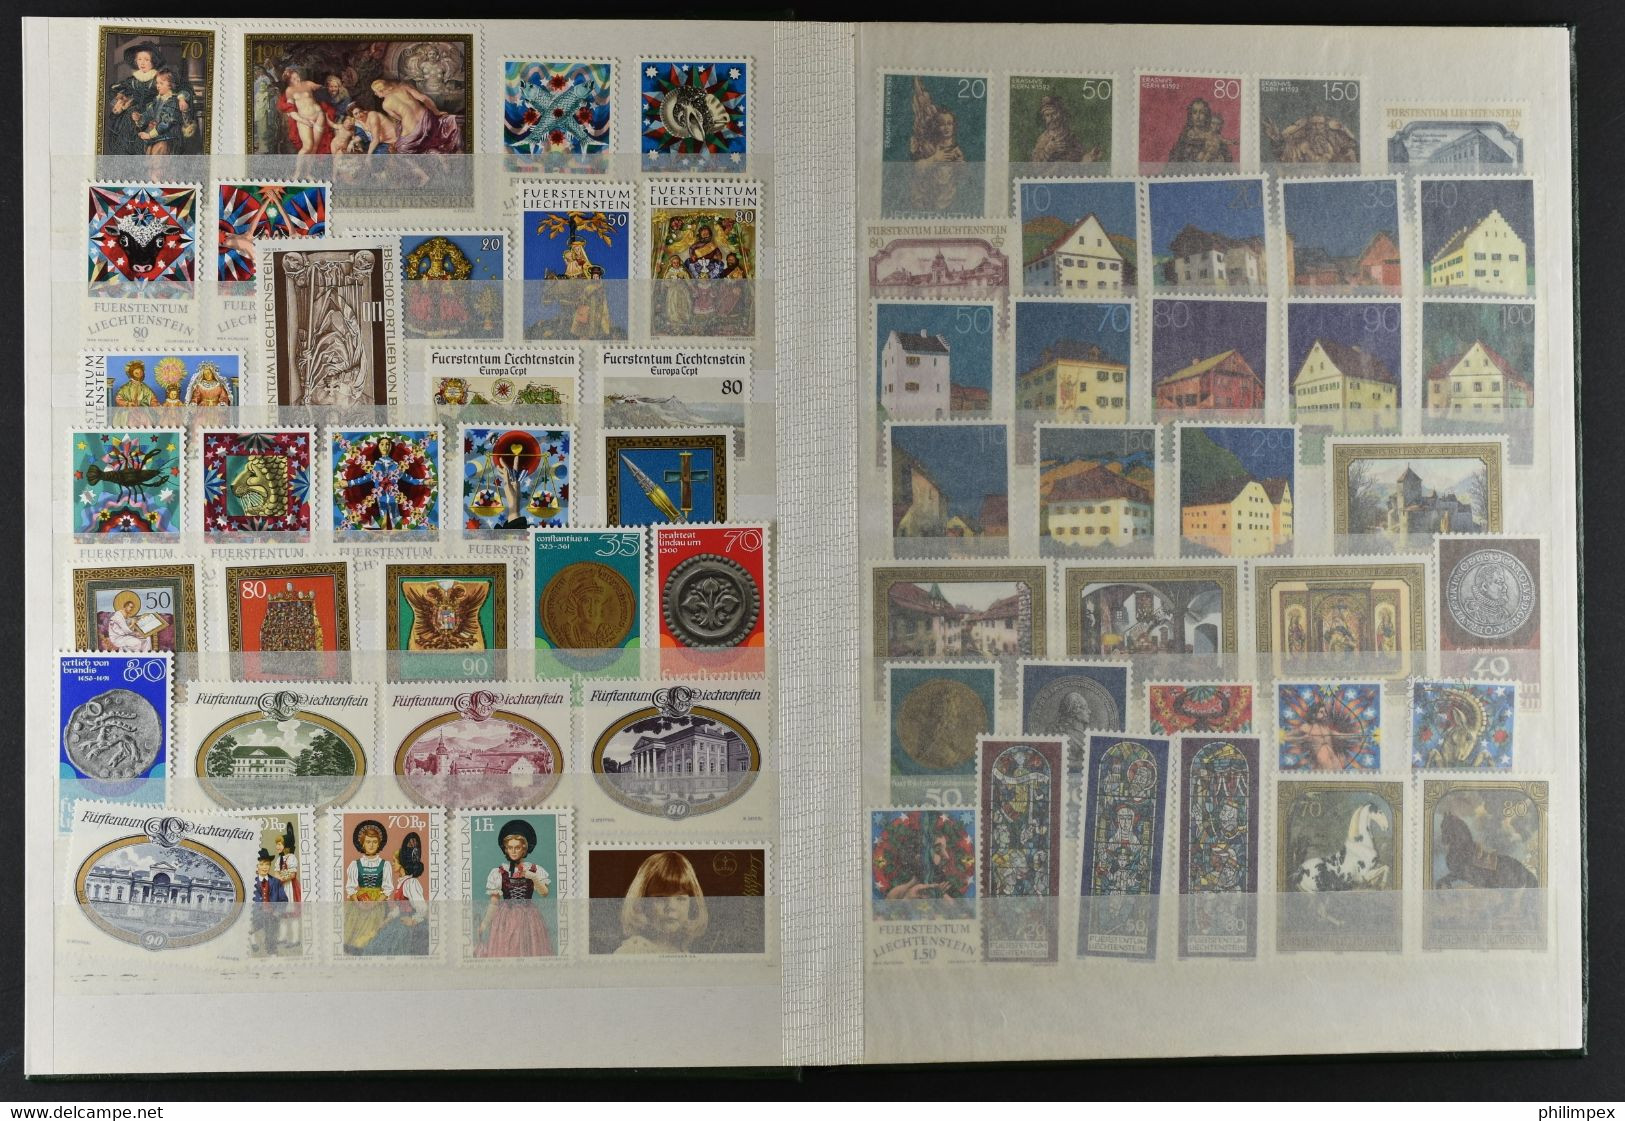 LIECHTENSTEIN, COLLECTION SETS 1975-94, NH - Lotes/Colecciones